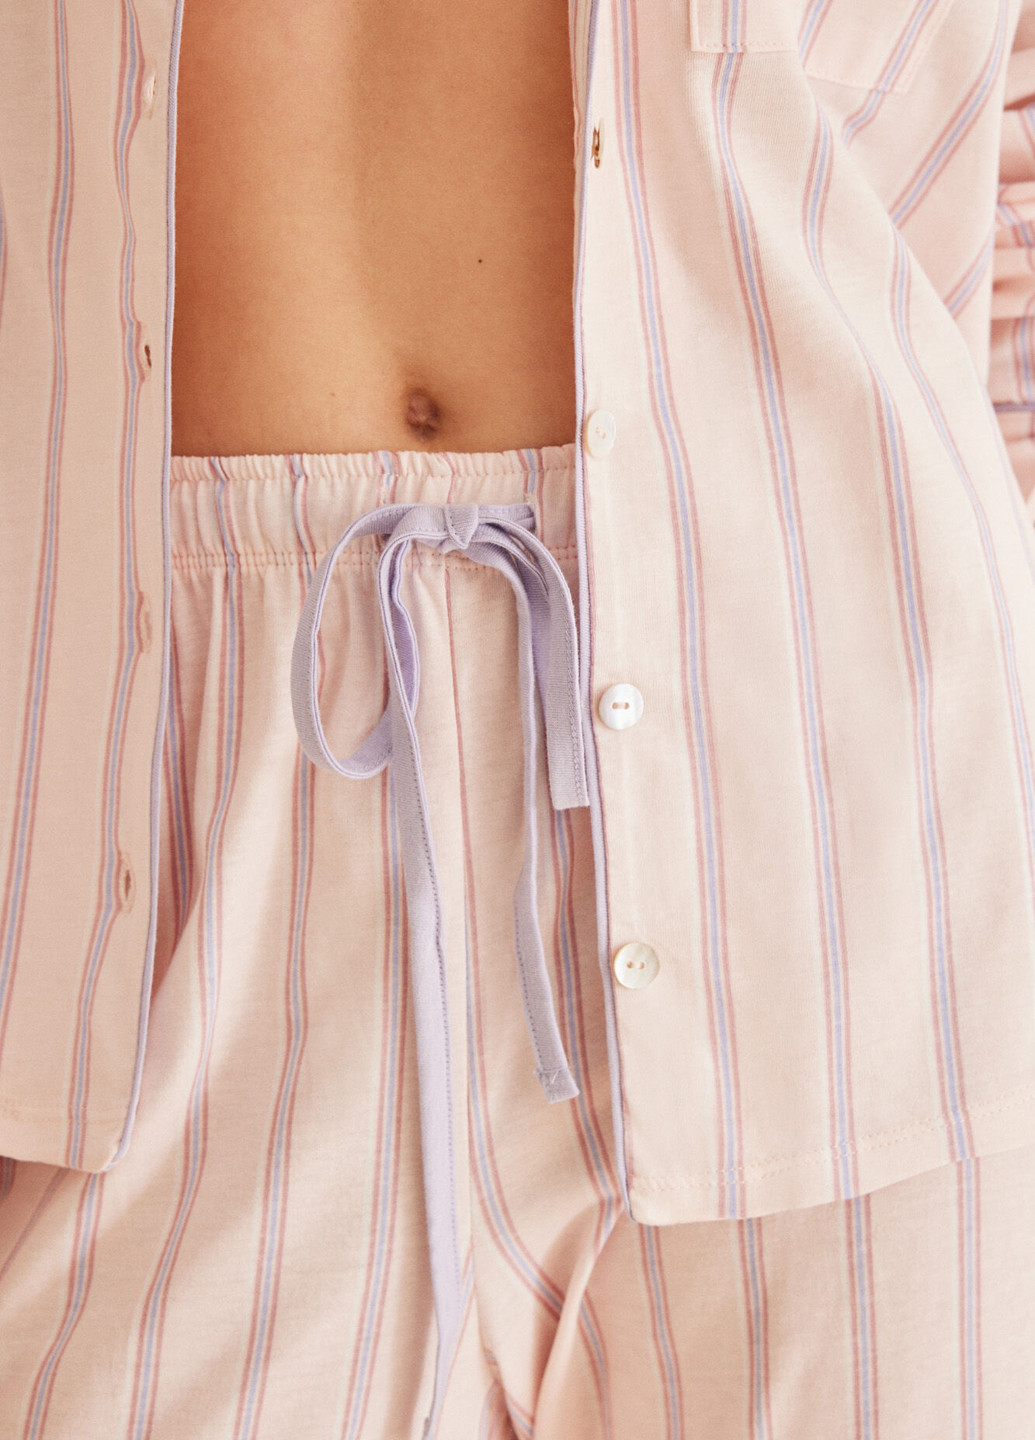 Розовая всесезон пижама (рубашка, брюки) рубашка + брюки Women'secret